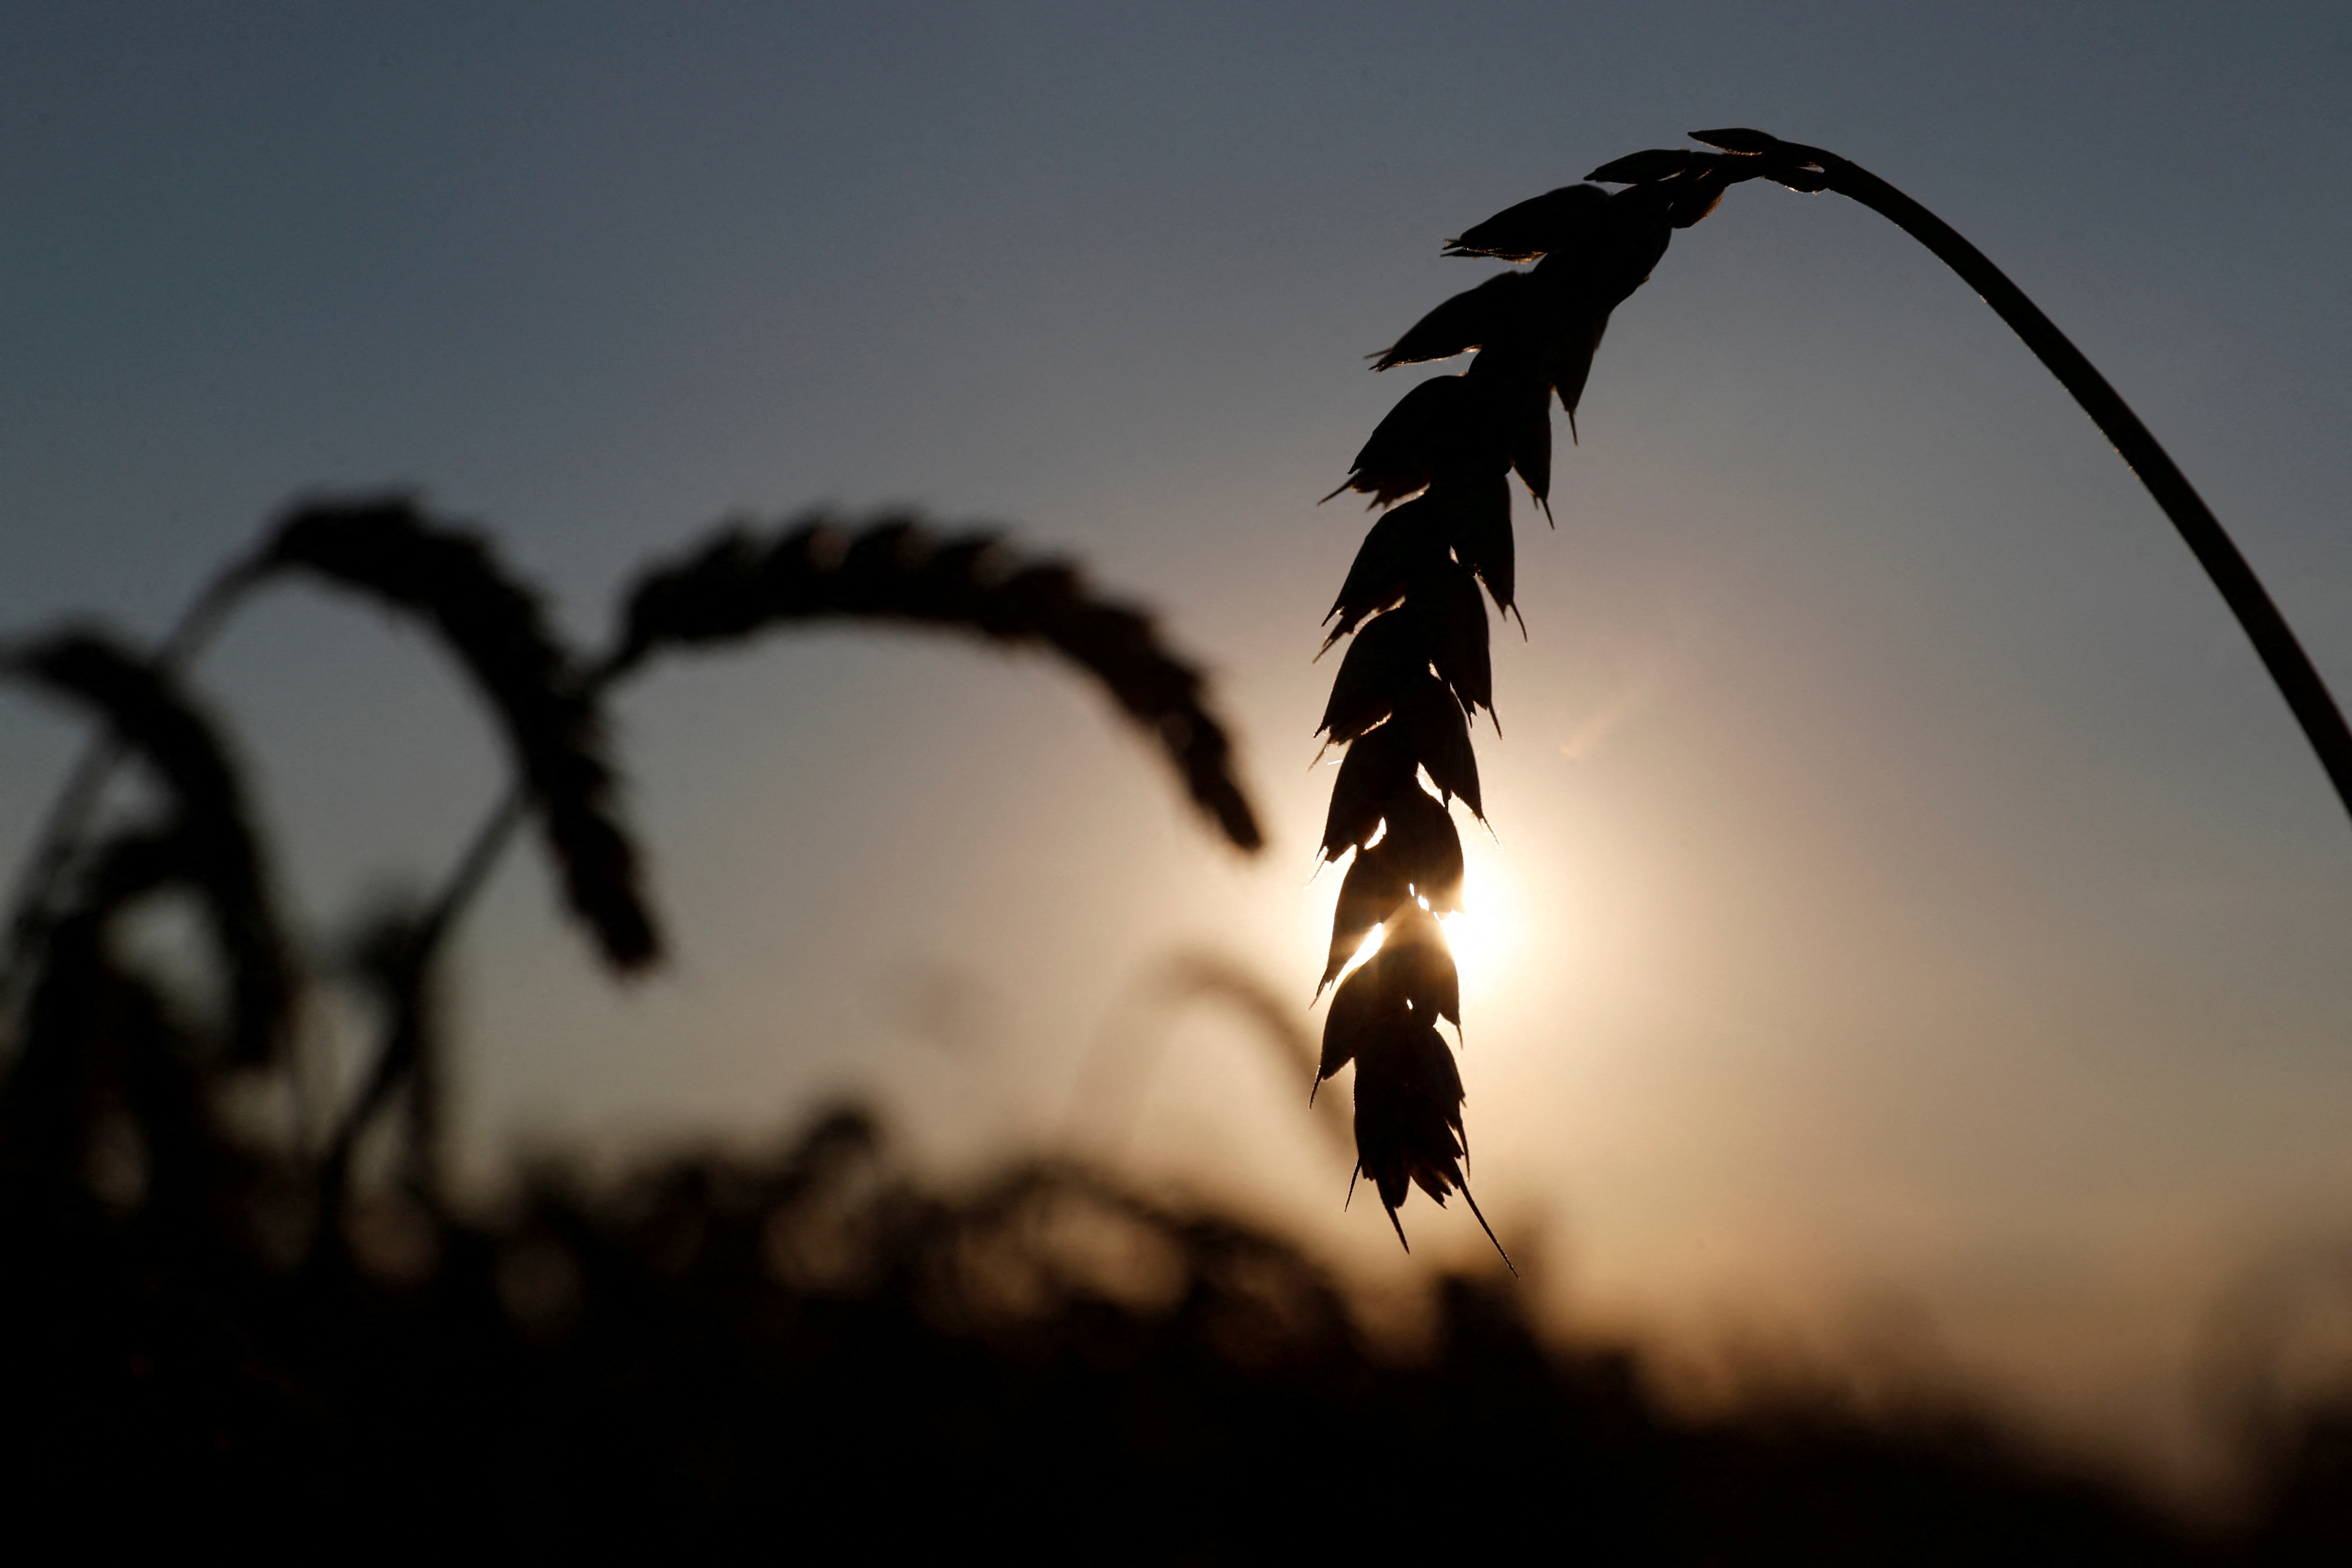 Ears of wheat are seen in a field in Kyiv region